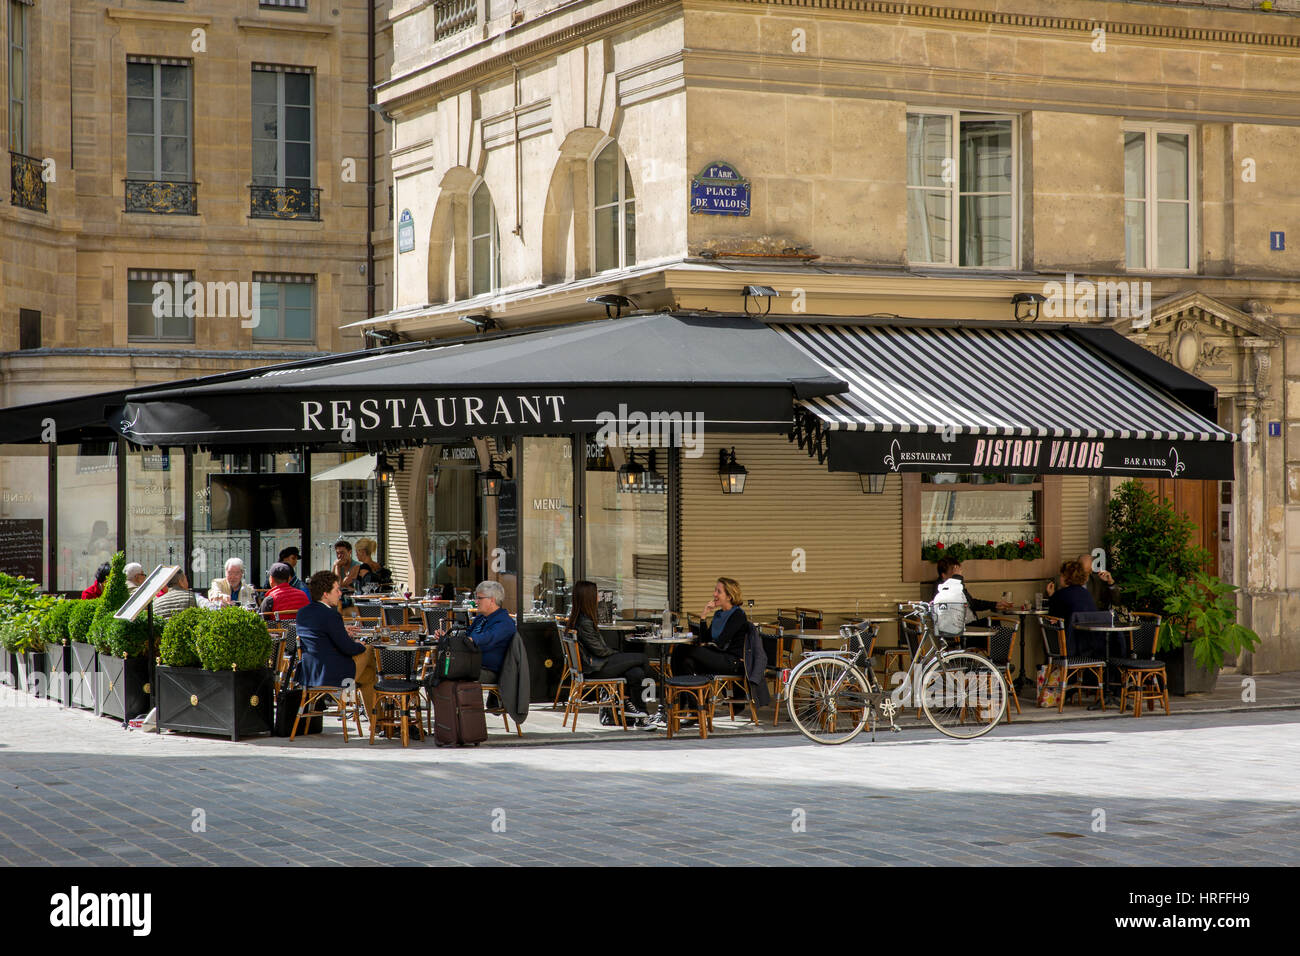 Bistrot Valois um die Mittagszeit in der Nähe von Palais Royal, Paris, Frankreich Stockfoto